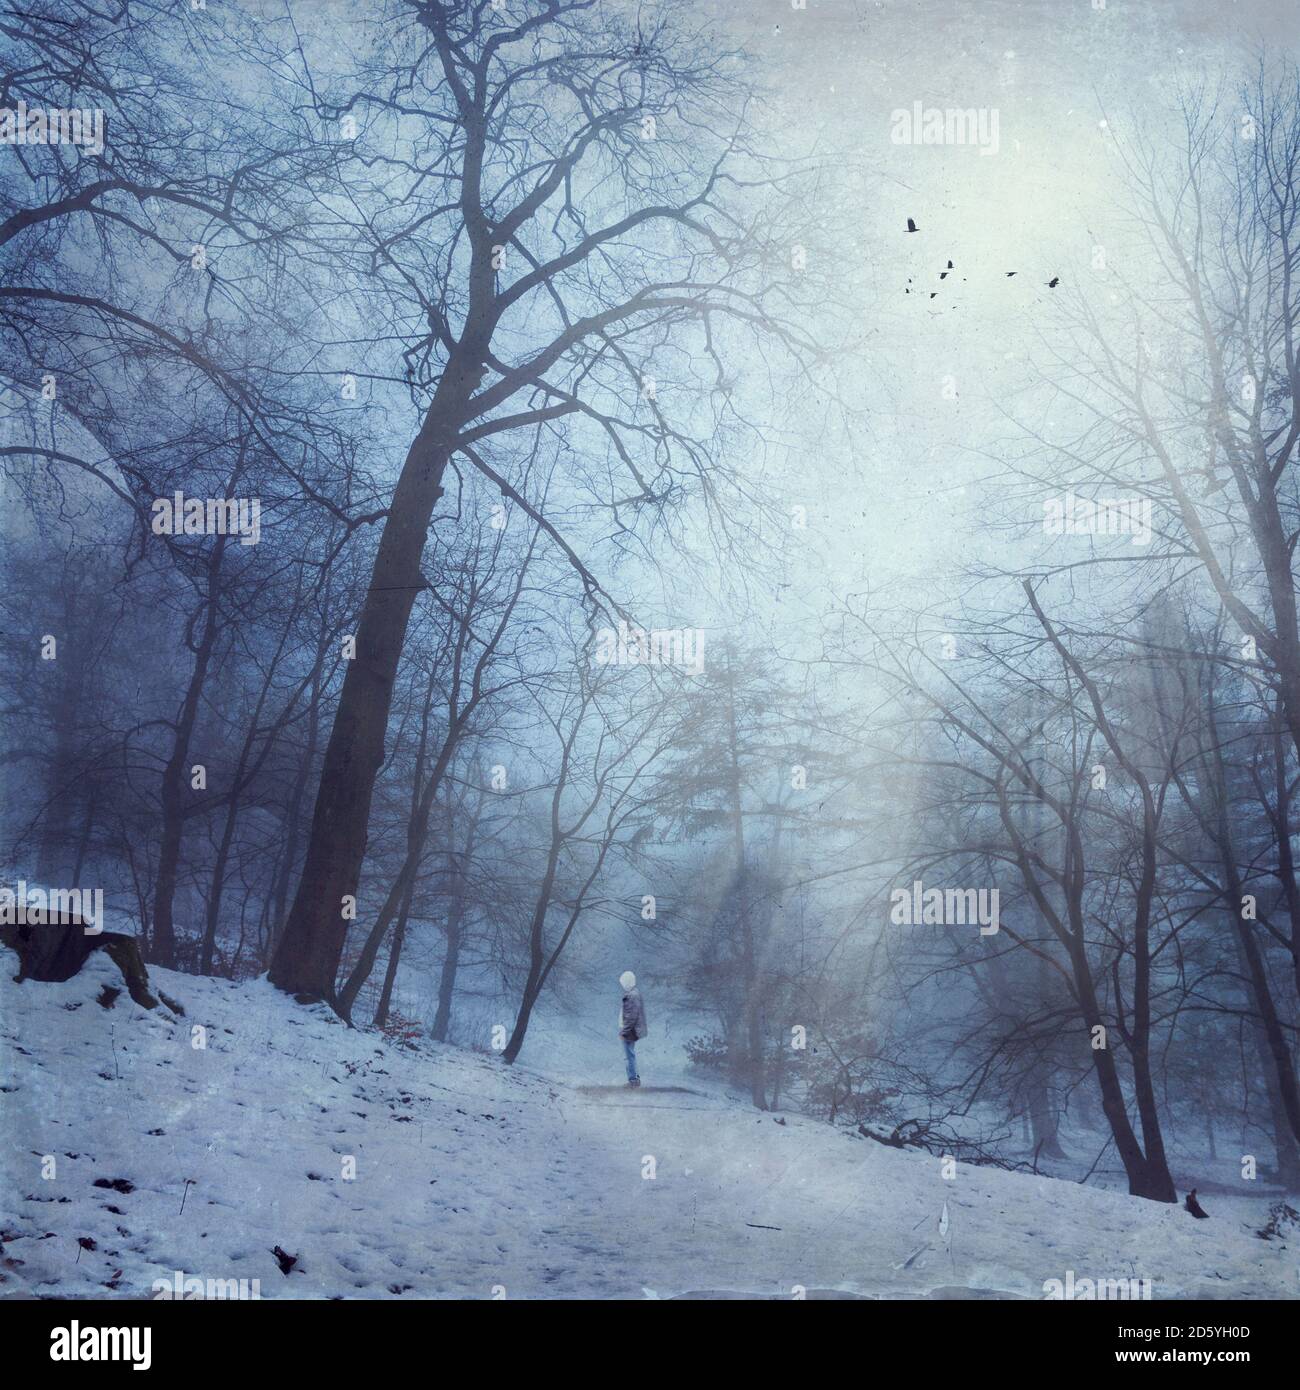 Germania, vicino a Wuppertal, uomo in piedi sulla pista forestale in inverno, fasci di luce e di uccelli, effetto testurizzato Foto Stock